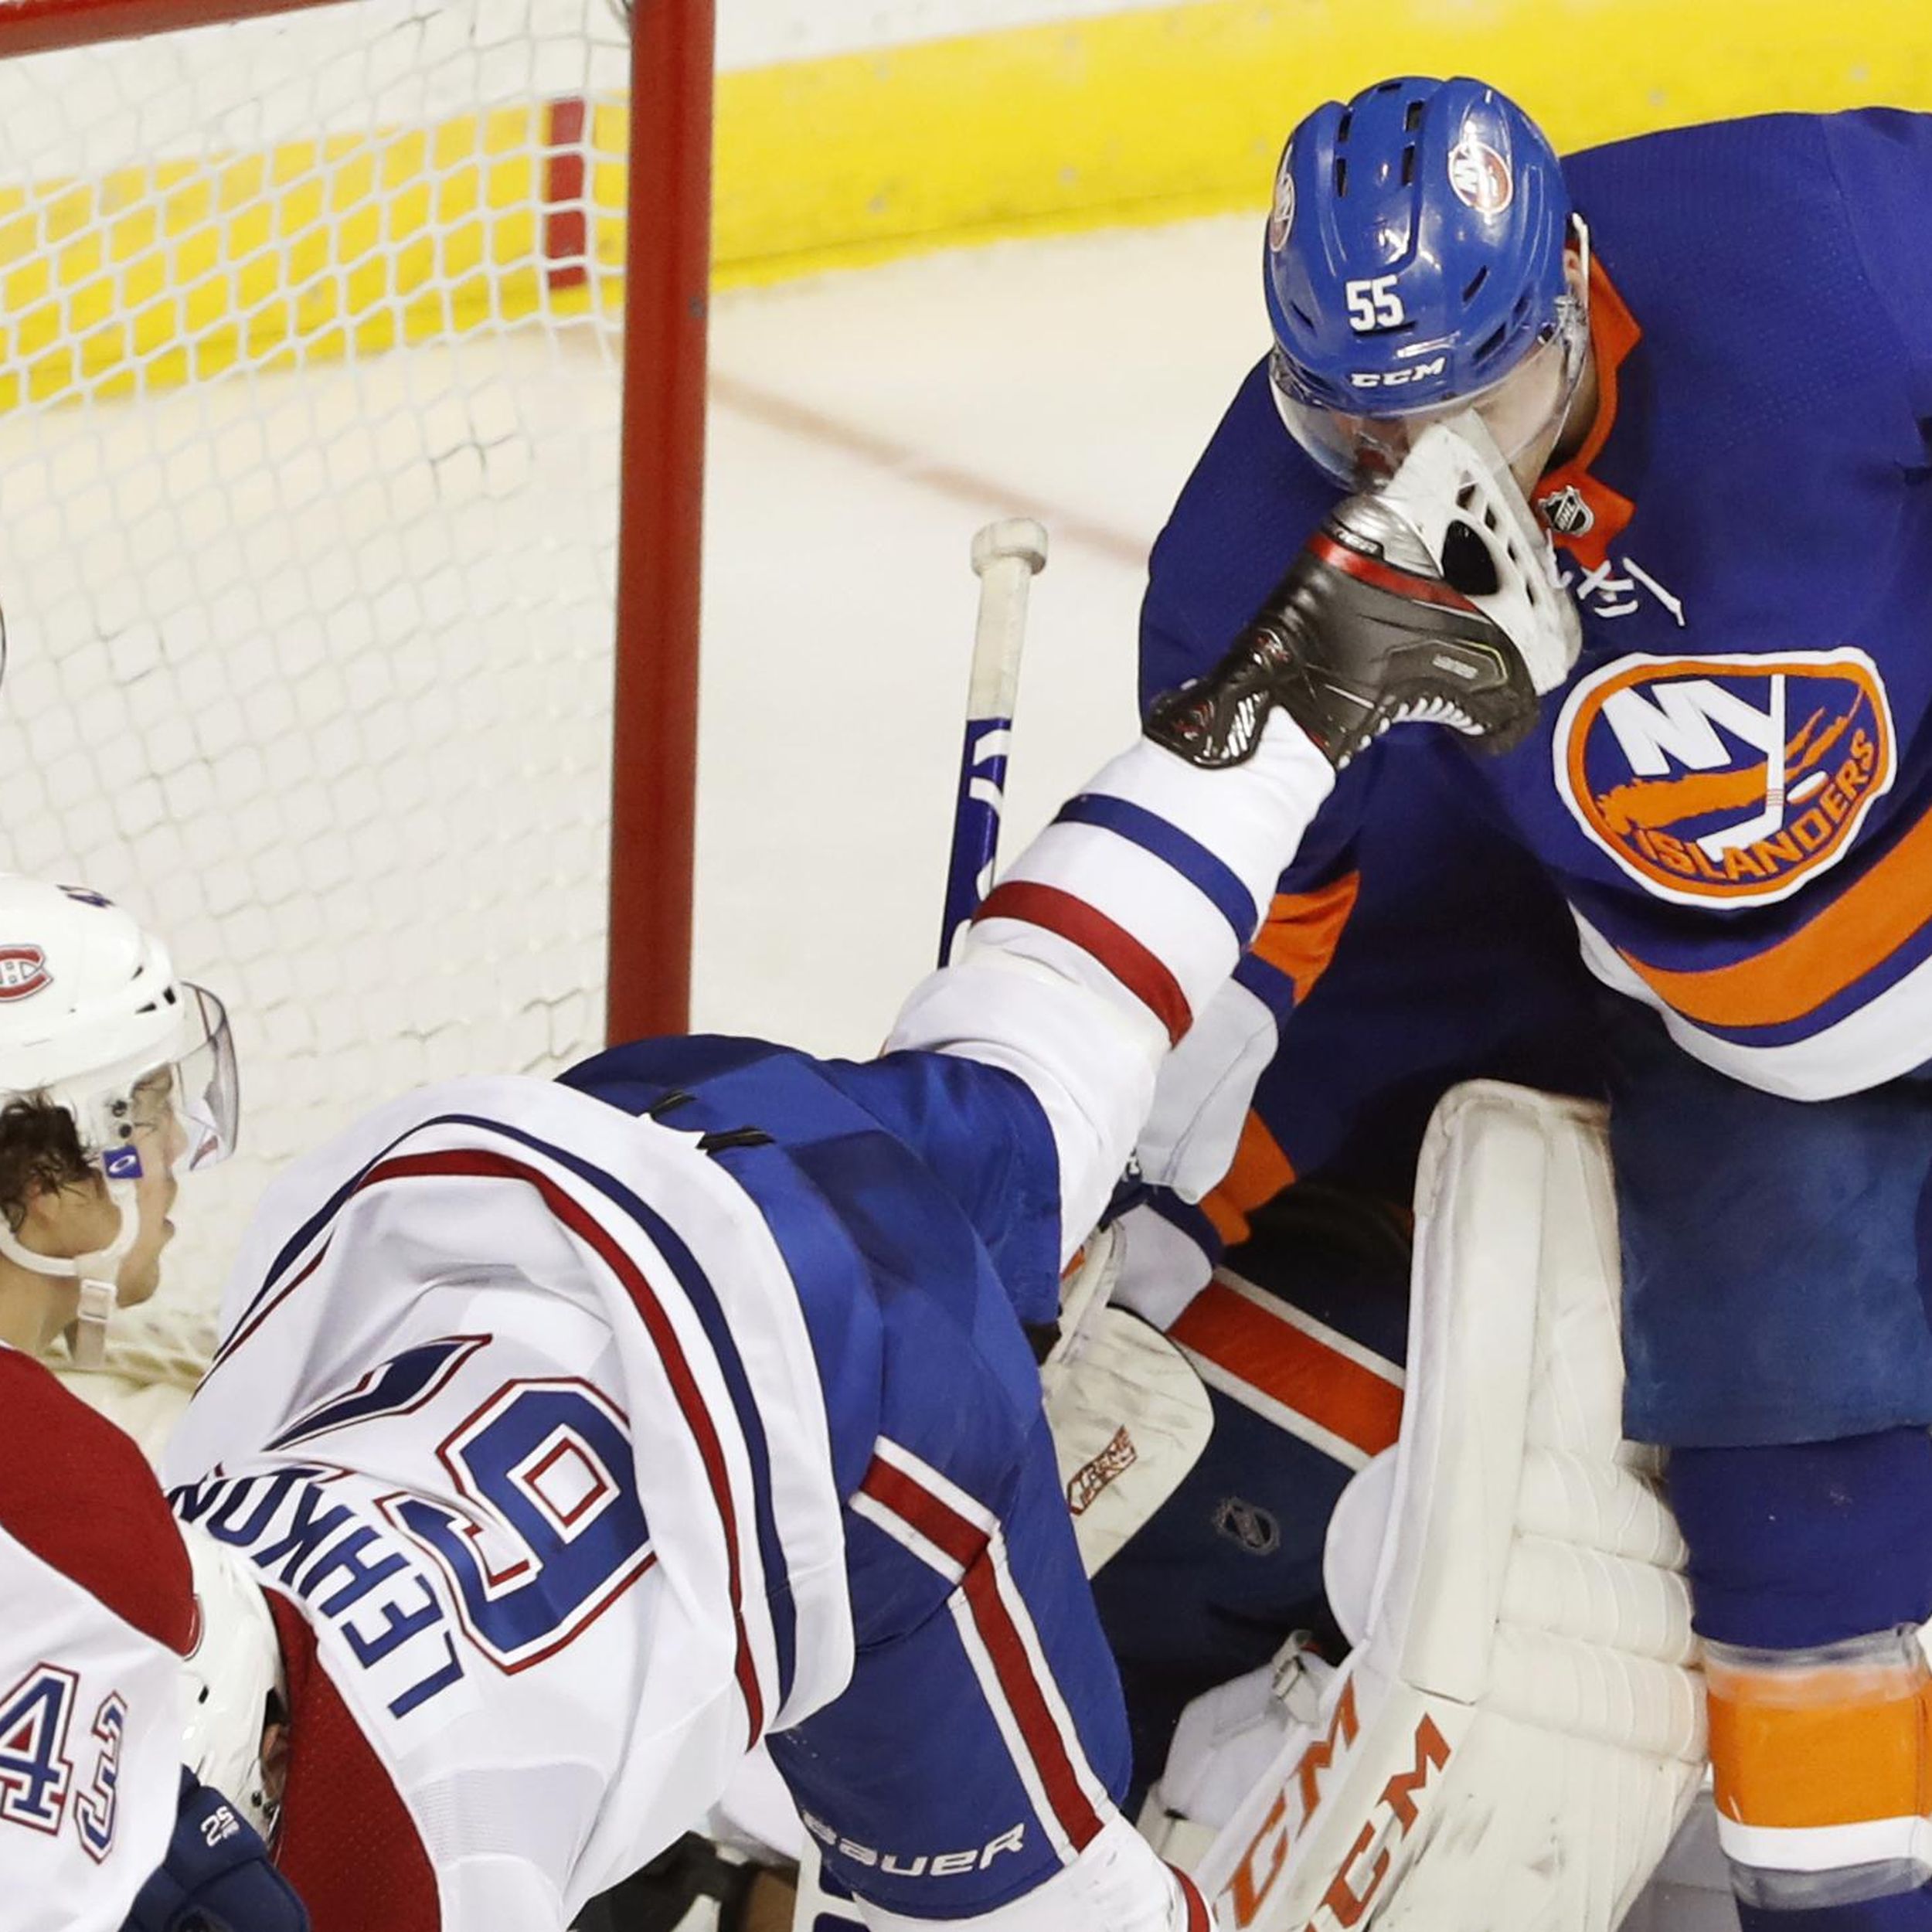 NHL's Johnny Boychuk Slashed In Eye With Skate, Took 90 Stitches